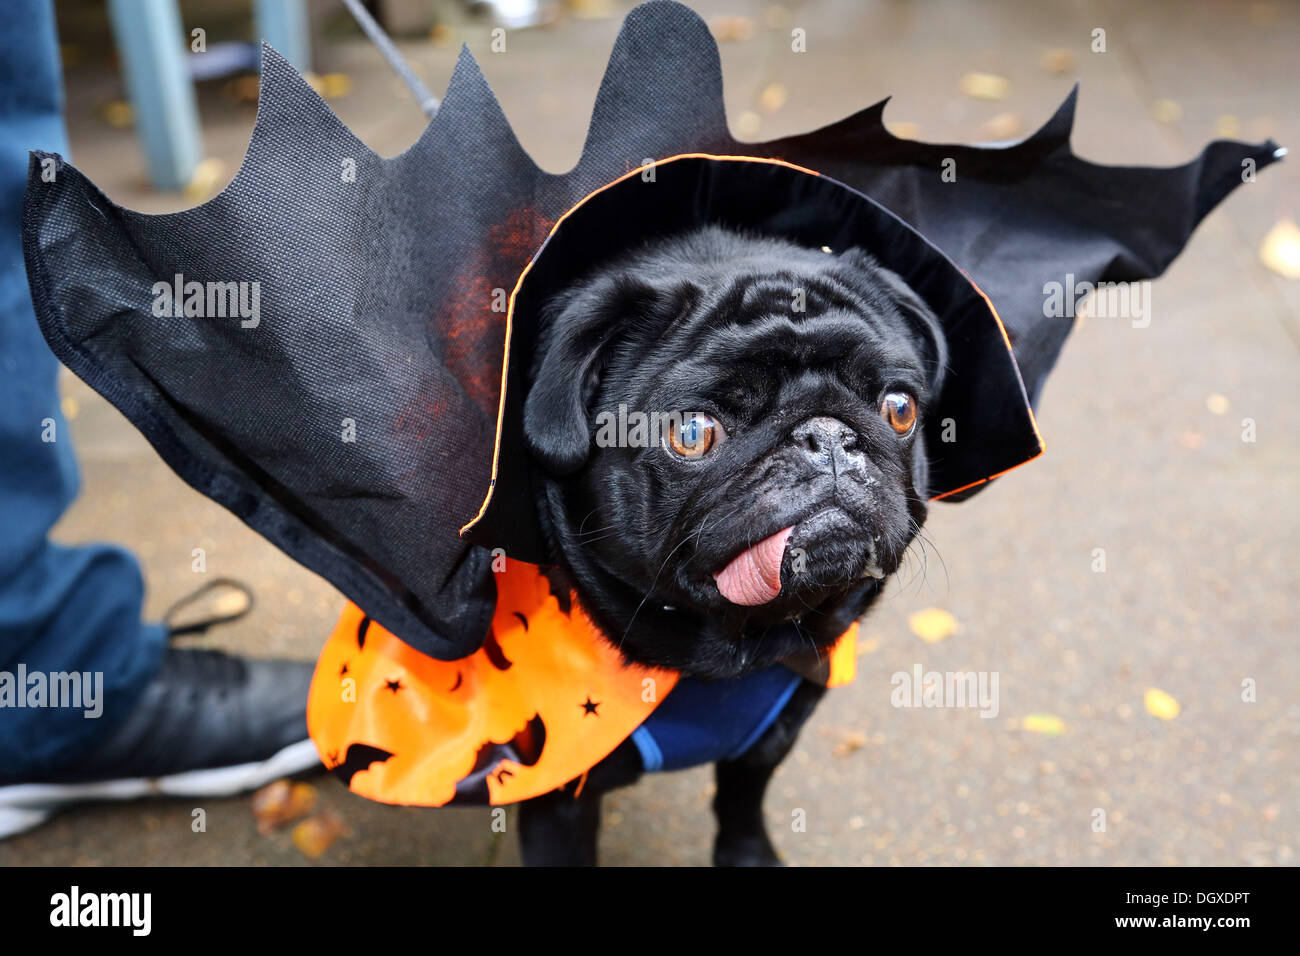 Londres, Reino Unido. 27 de octubre de 2013. Boris el Pug vestidos  vistiendo un traje de vampiro con alas a todos los perros importa Halloween  Disfraces perro a pasear, Hampstead Heath, Londres